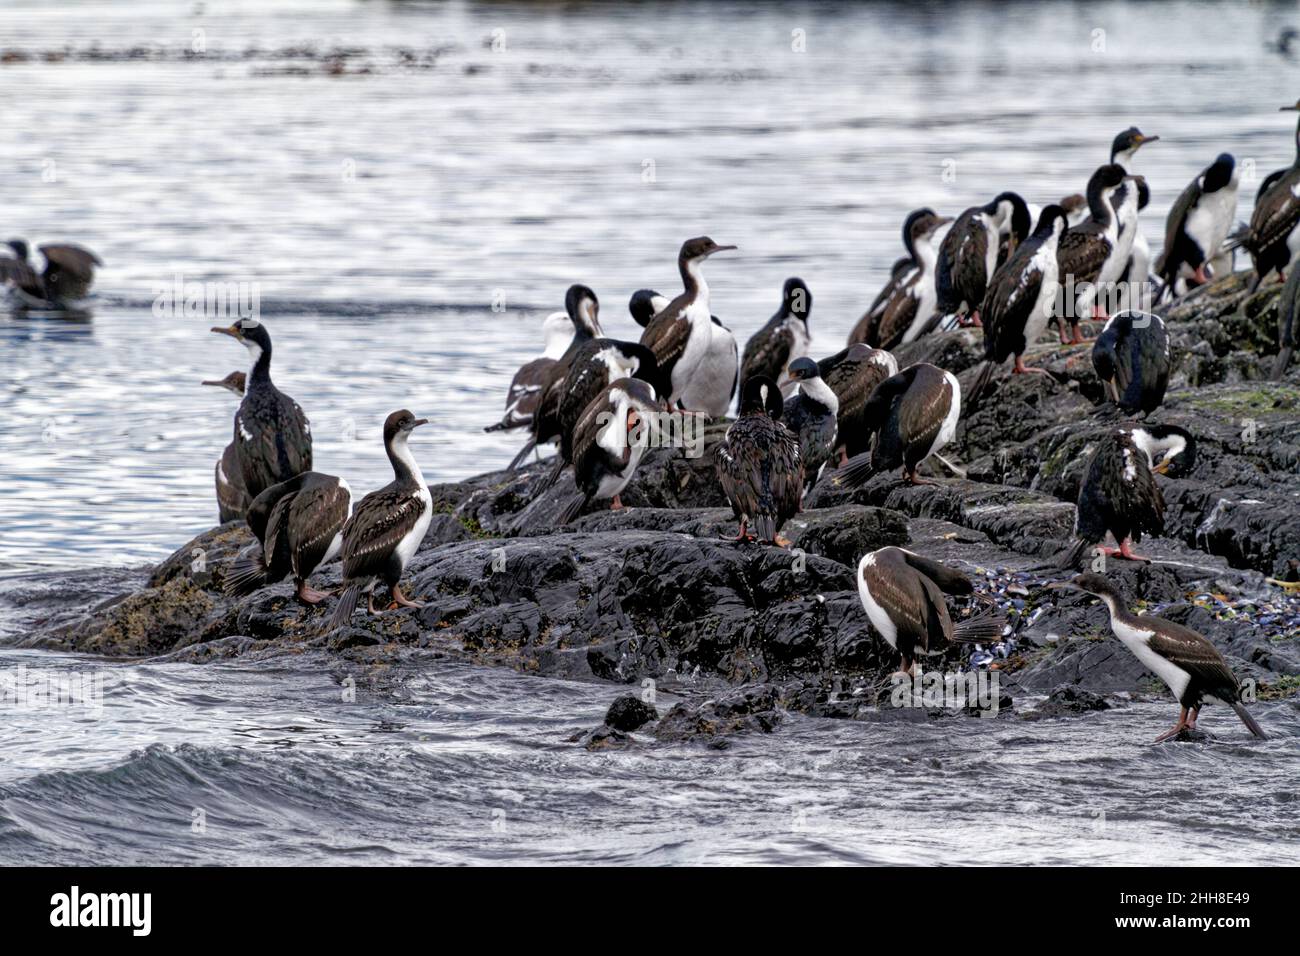 Colonie de cormorans impériaux (Leucocarbo atriceps) dans le chenal Beagle, Ushuaia, Tierra del Fuego, Argentine, Amérique du Sud Banque D'Images